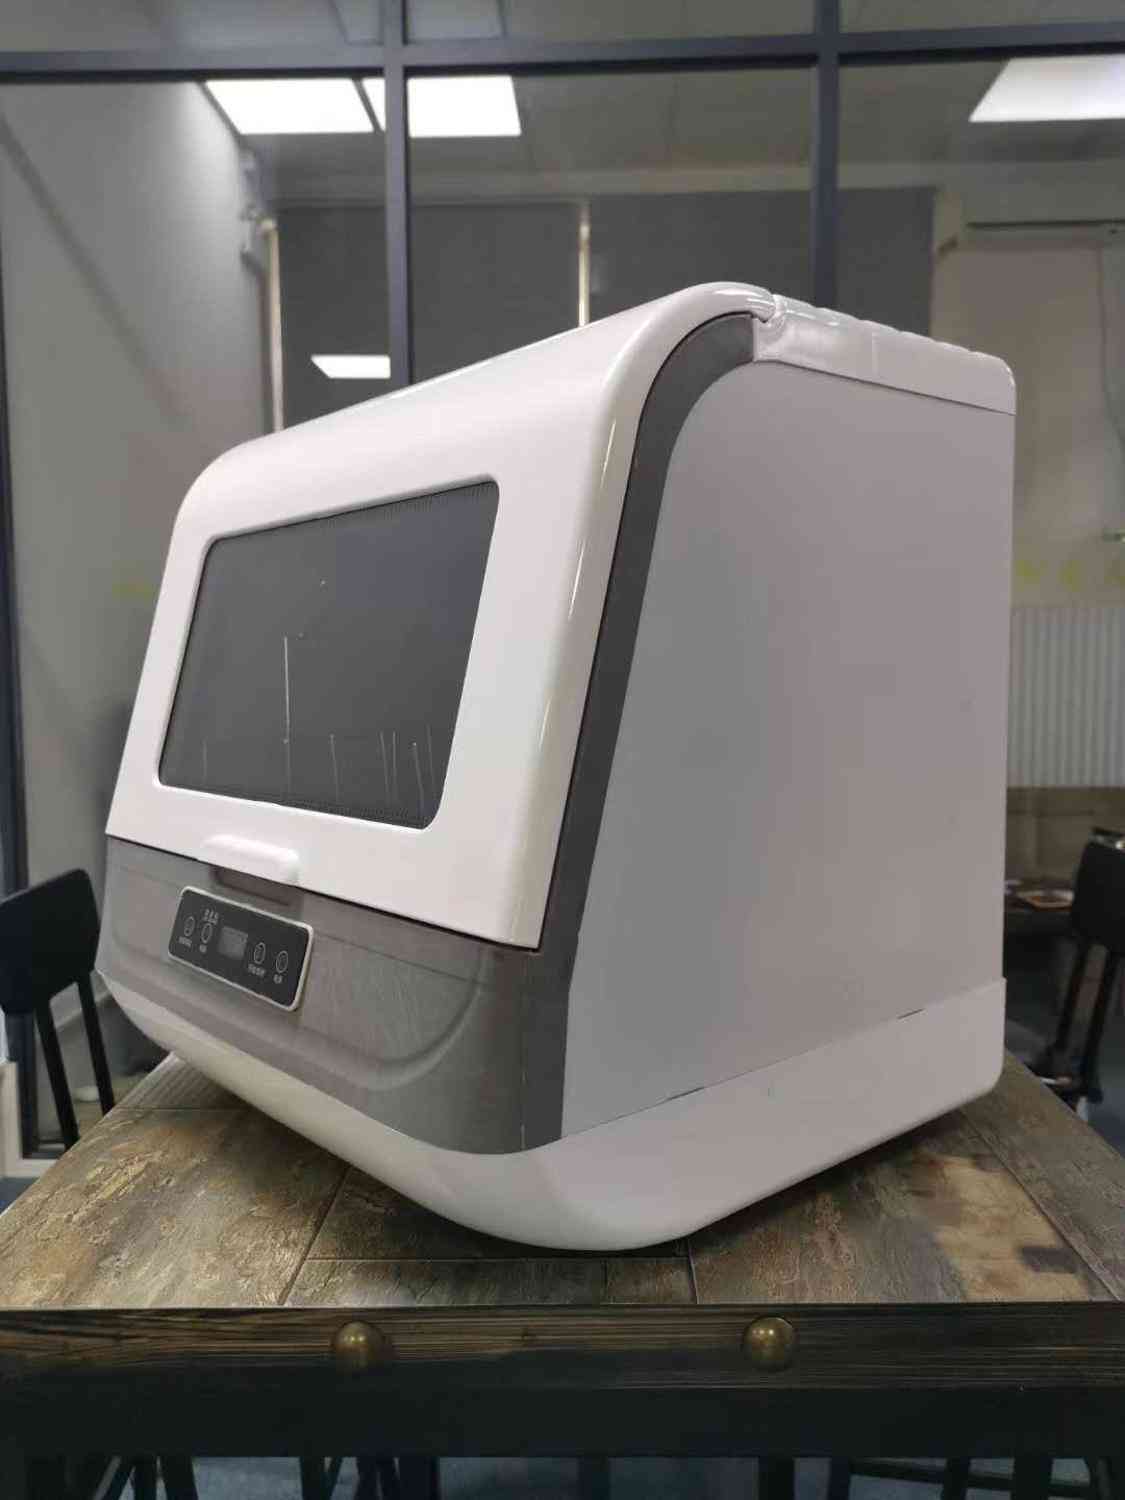 Escritorio doméstico automático pequeño gabinete de desinfección máquina inteligente de lavavajillas